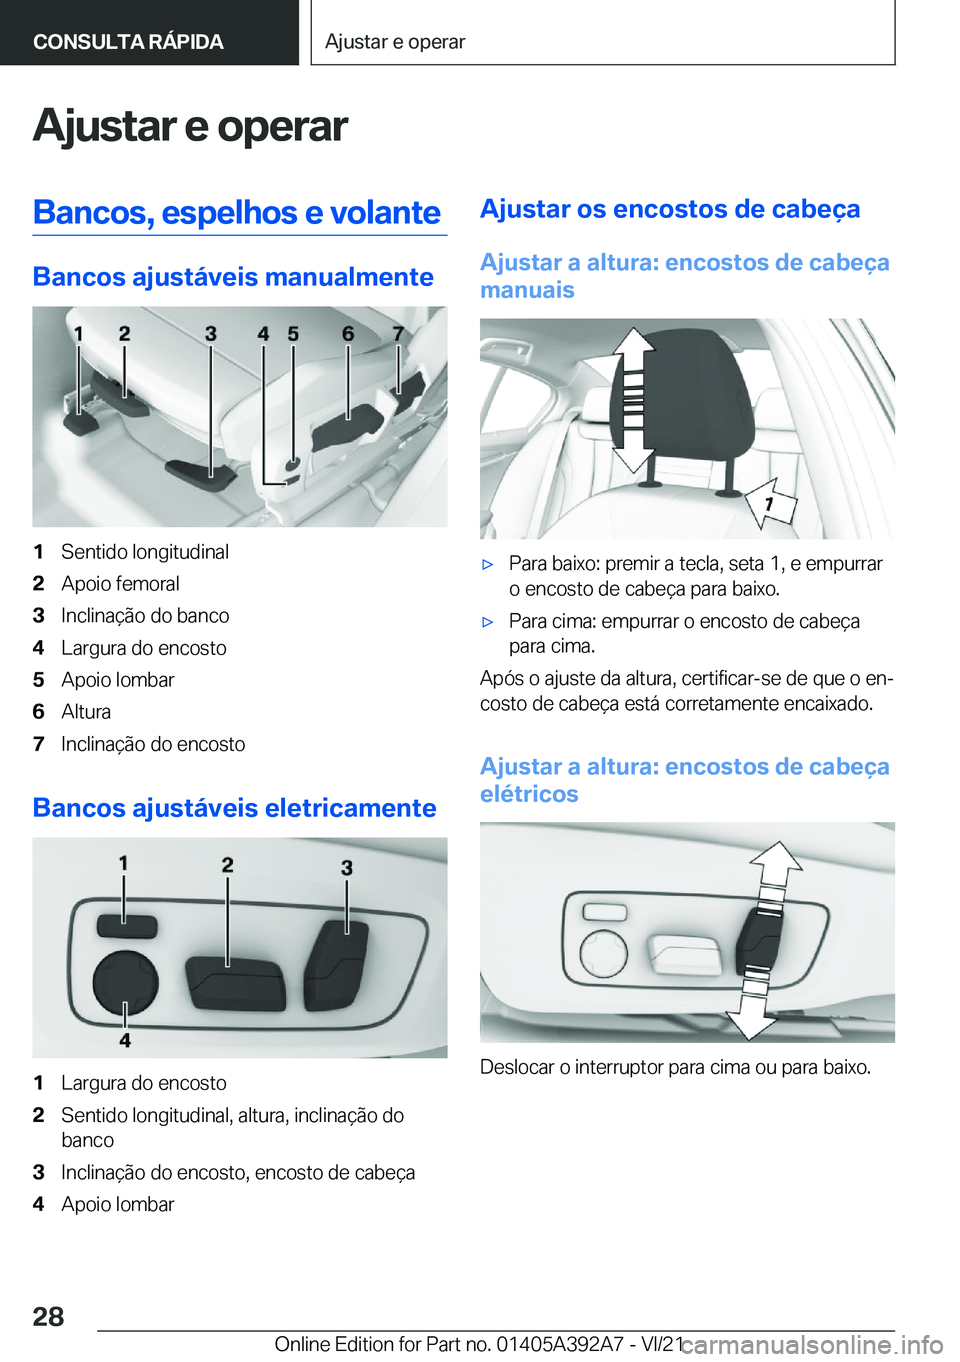 BMW 4 SERIES 2022  Manual do condutor (in Portuguese) �A�j�u�s�t�a�r��e��o�p�e�r�a�r�B�a�n�c�o�s�,��e�s�p�e�l�h�o�s��e��v�o�l�a�n�t�e
�B�a�n�c�o�s��a�j�u�s�t�á�v�e�i�s��m�a�n�u�a�l�m�e�n�t�e
�1�S�e�n�t�i�d�o��l�o�n�g�i�t�u�d�i�n�a�l�2�A�p�o�i�o�